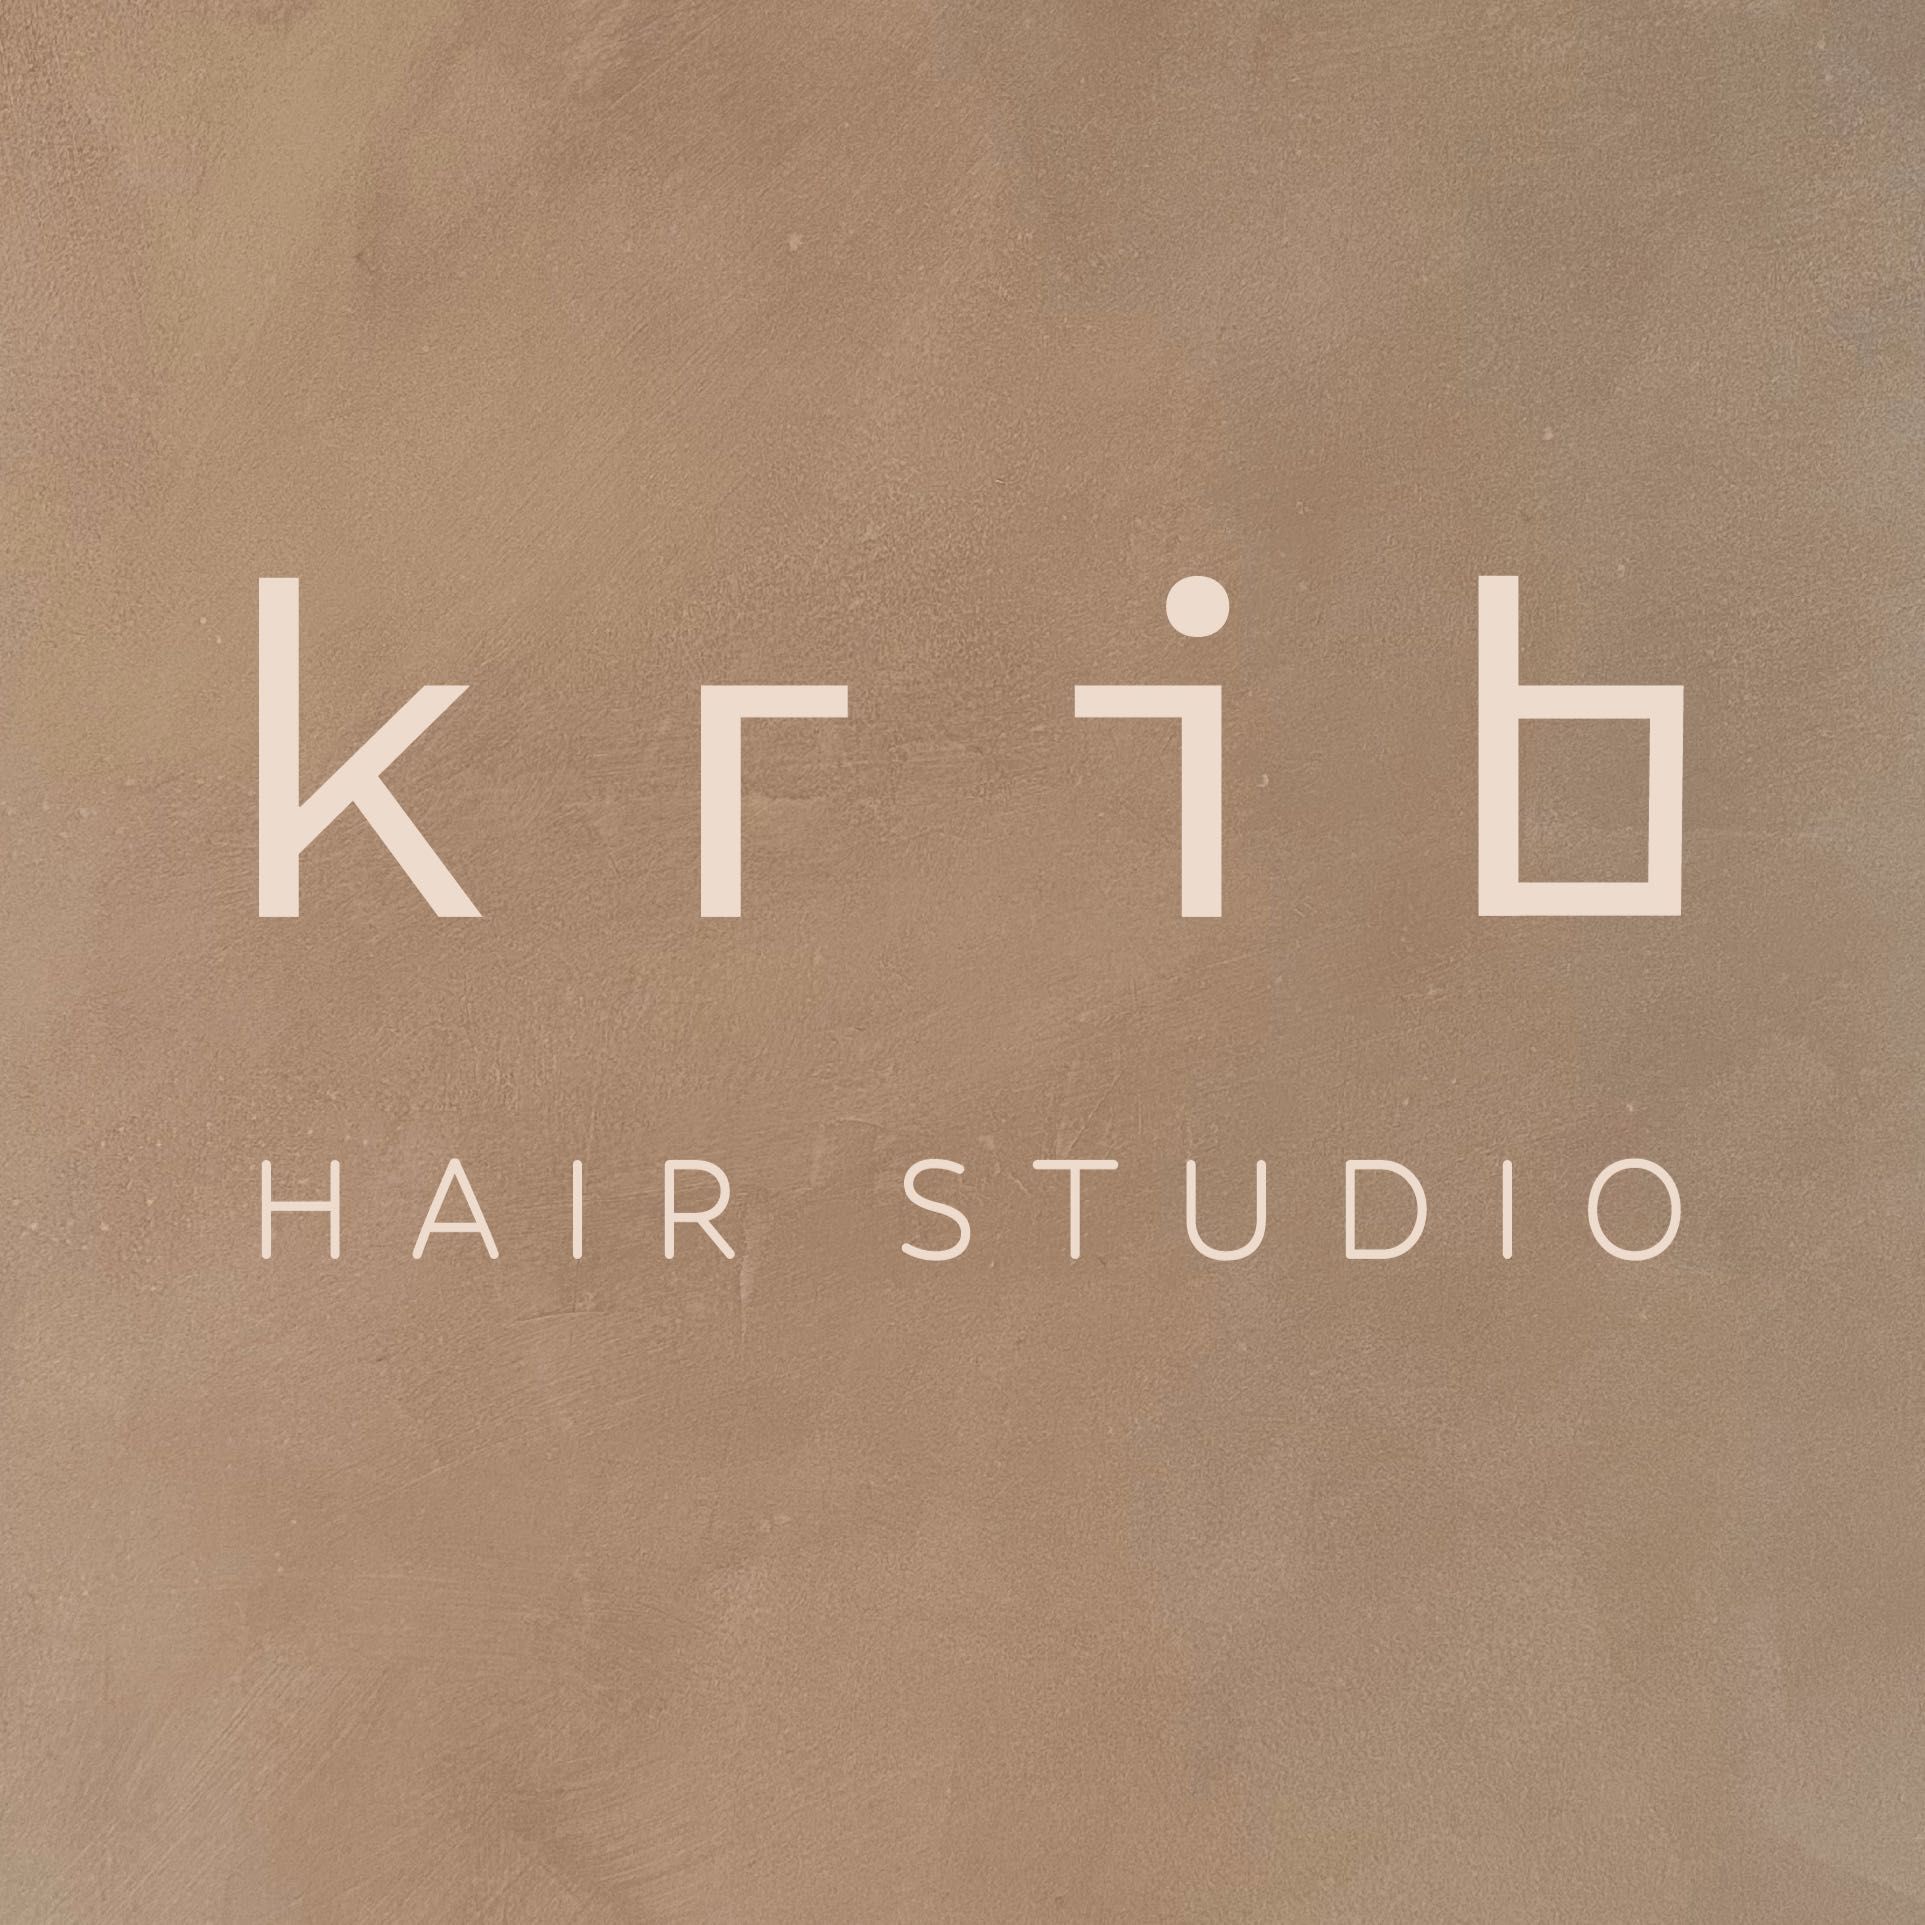 Pedro Plastic | Krib Hair Studio, 3rd Floor, 202 City Road, Krib Hair, EC1V 2PH, London, London